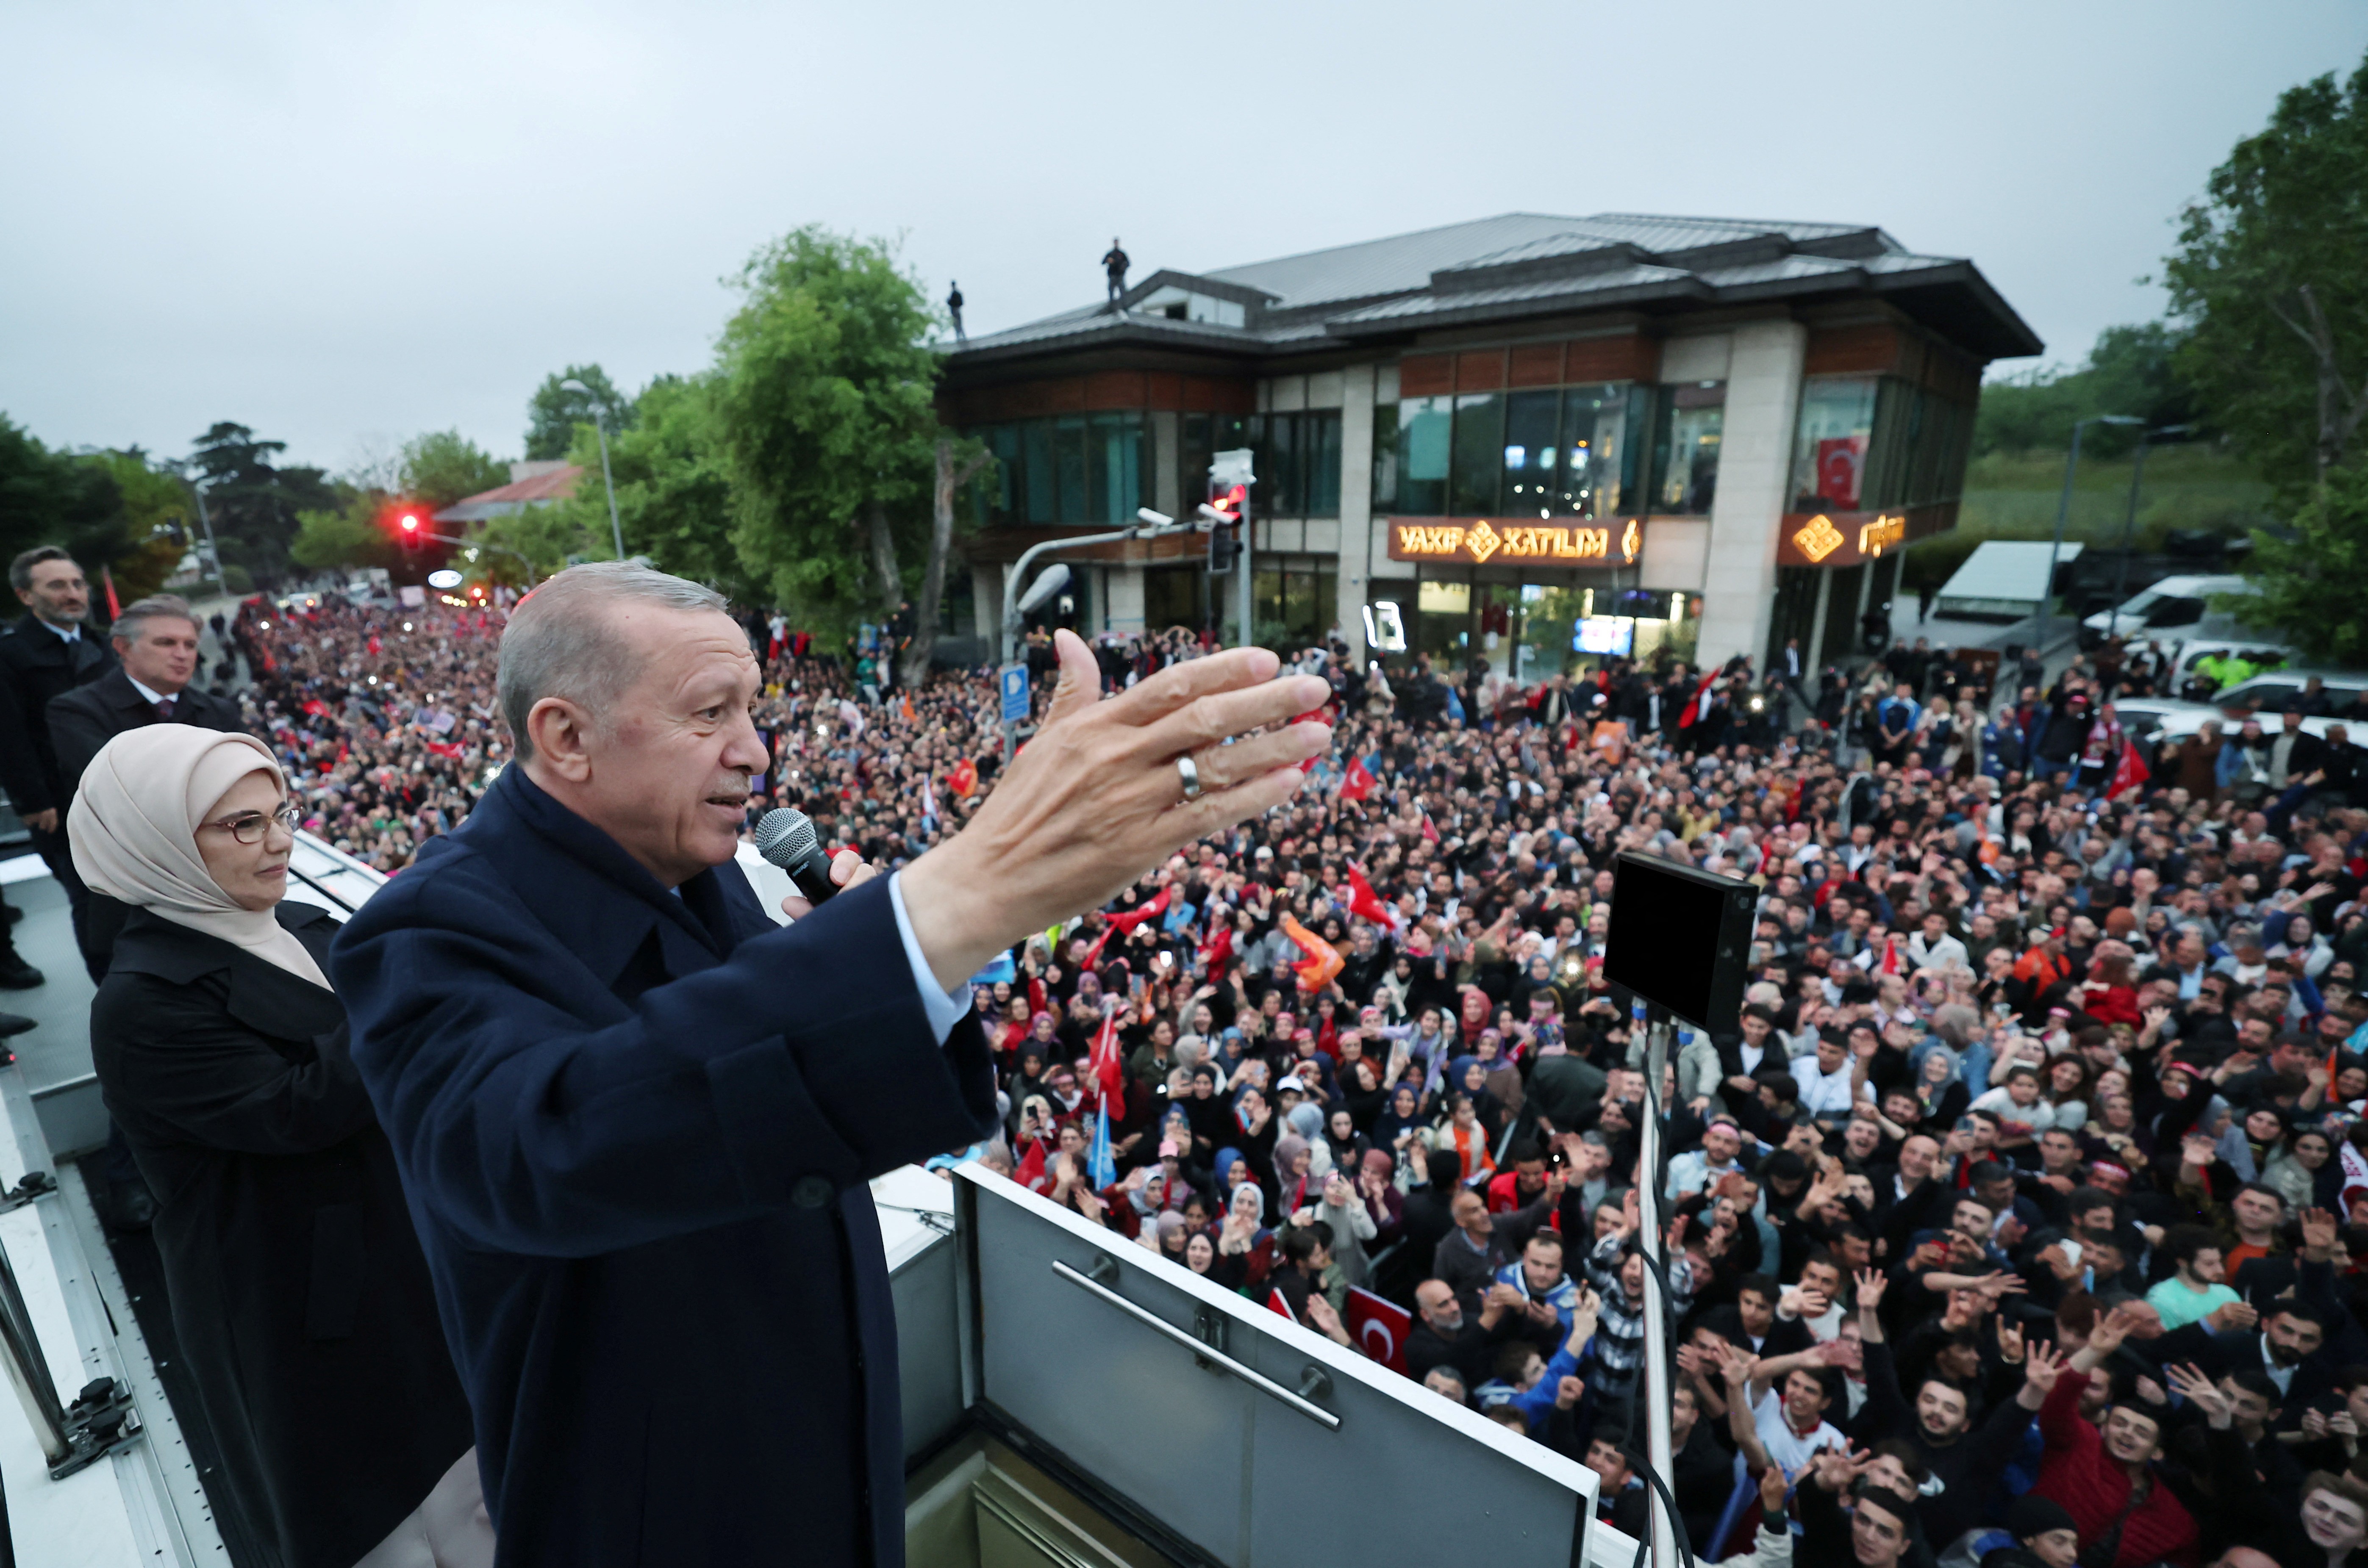 
Após vitória eleitoral, Erdogan atira para todo lado
